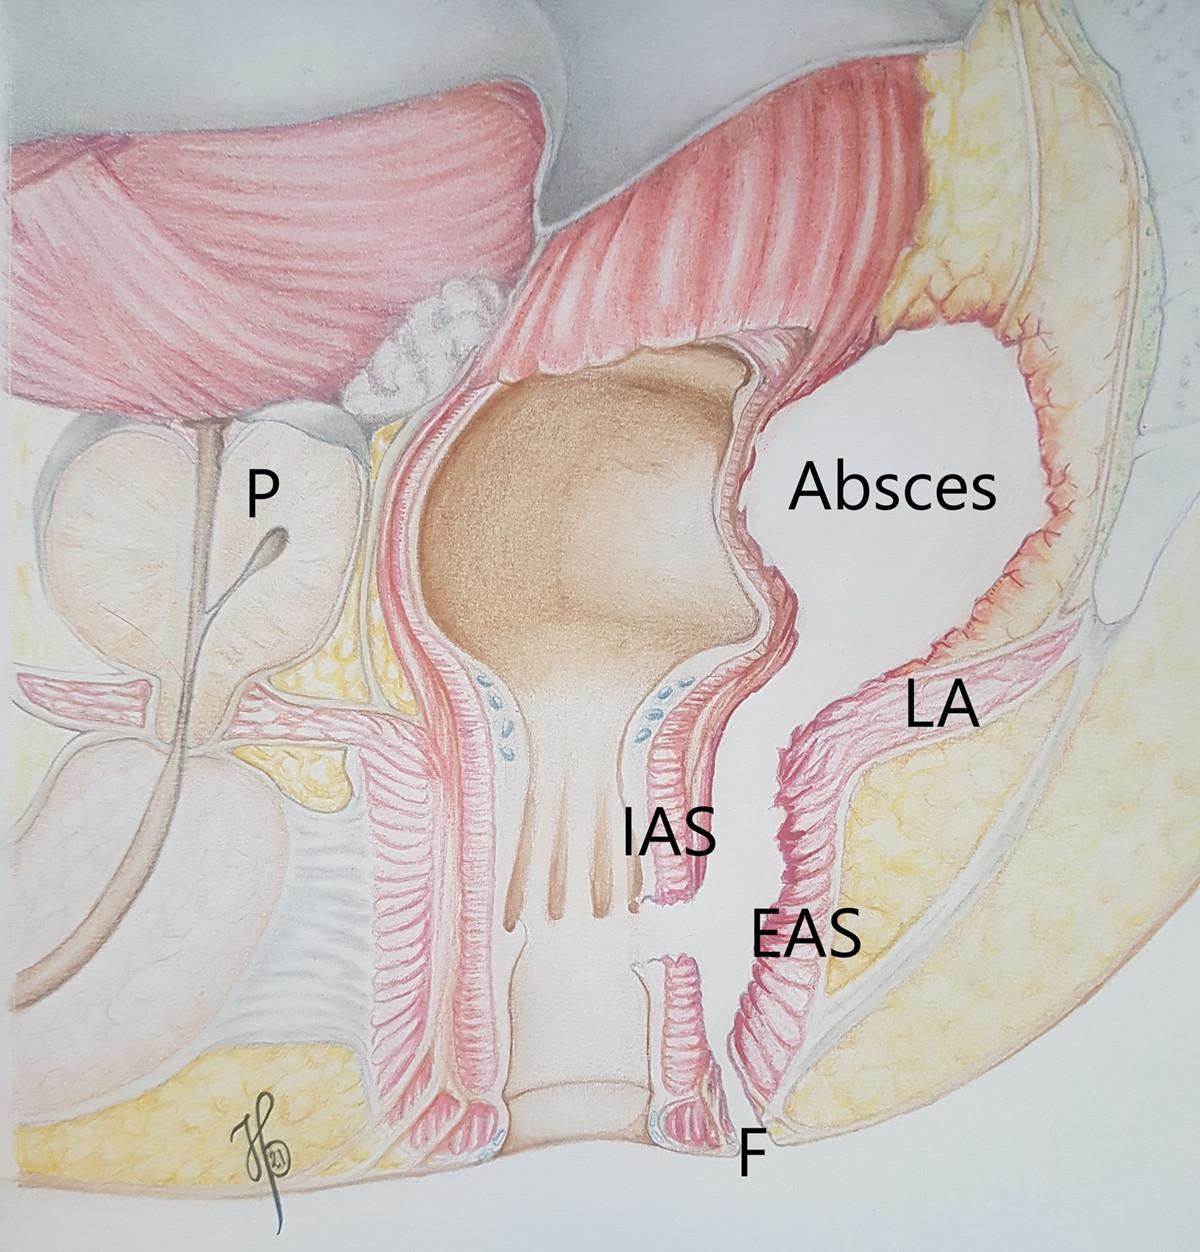 Sagittalsnit af absceslokalisation. EAS = eksterne analsphinkter; F = fistel; IAS = interne analsphinkter; LA = levator ani; P = prostata.